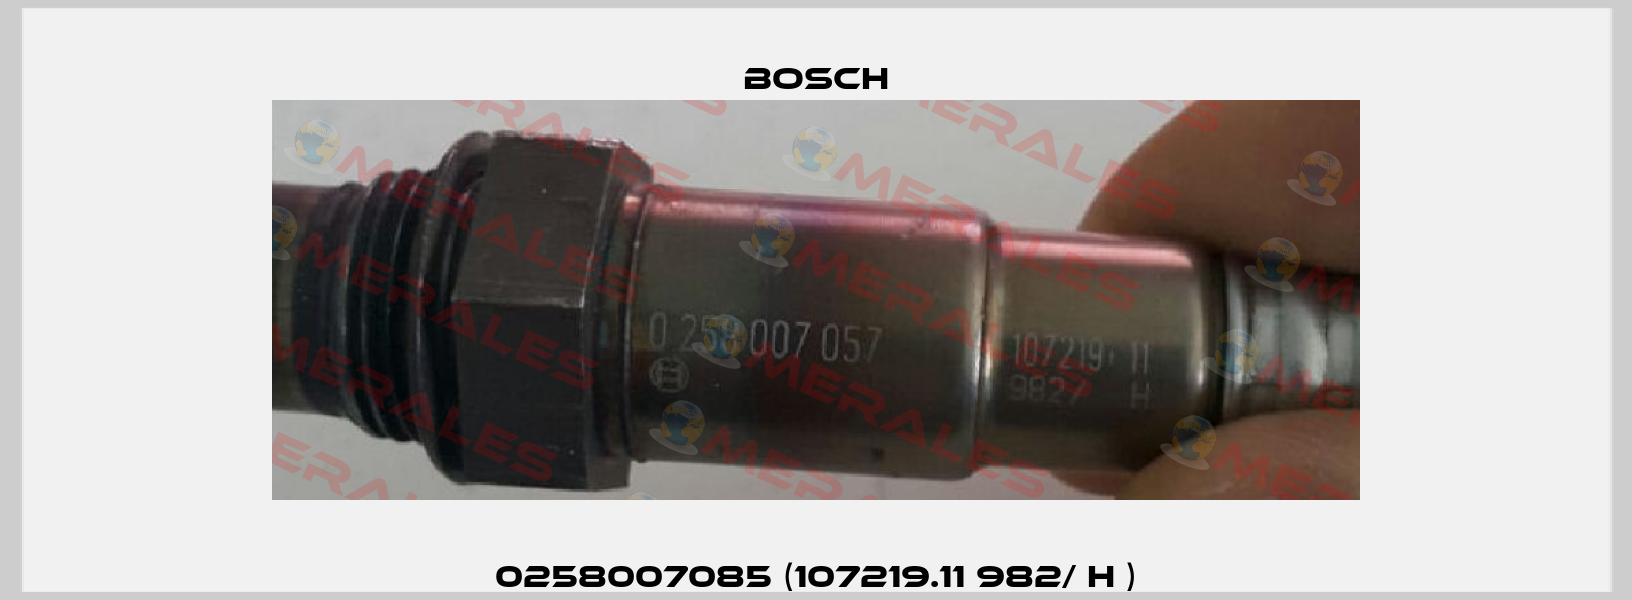 0258007085 (107219.11 982/ H ) Bosch